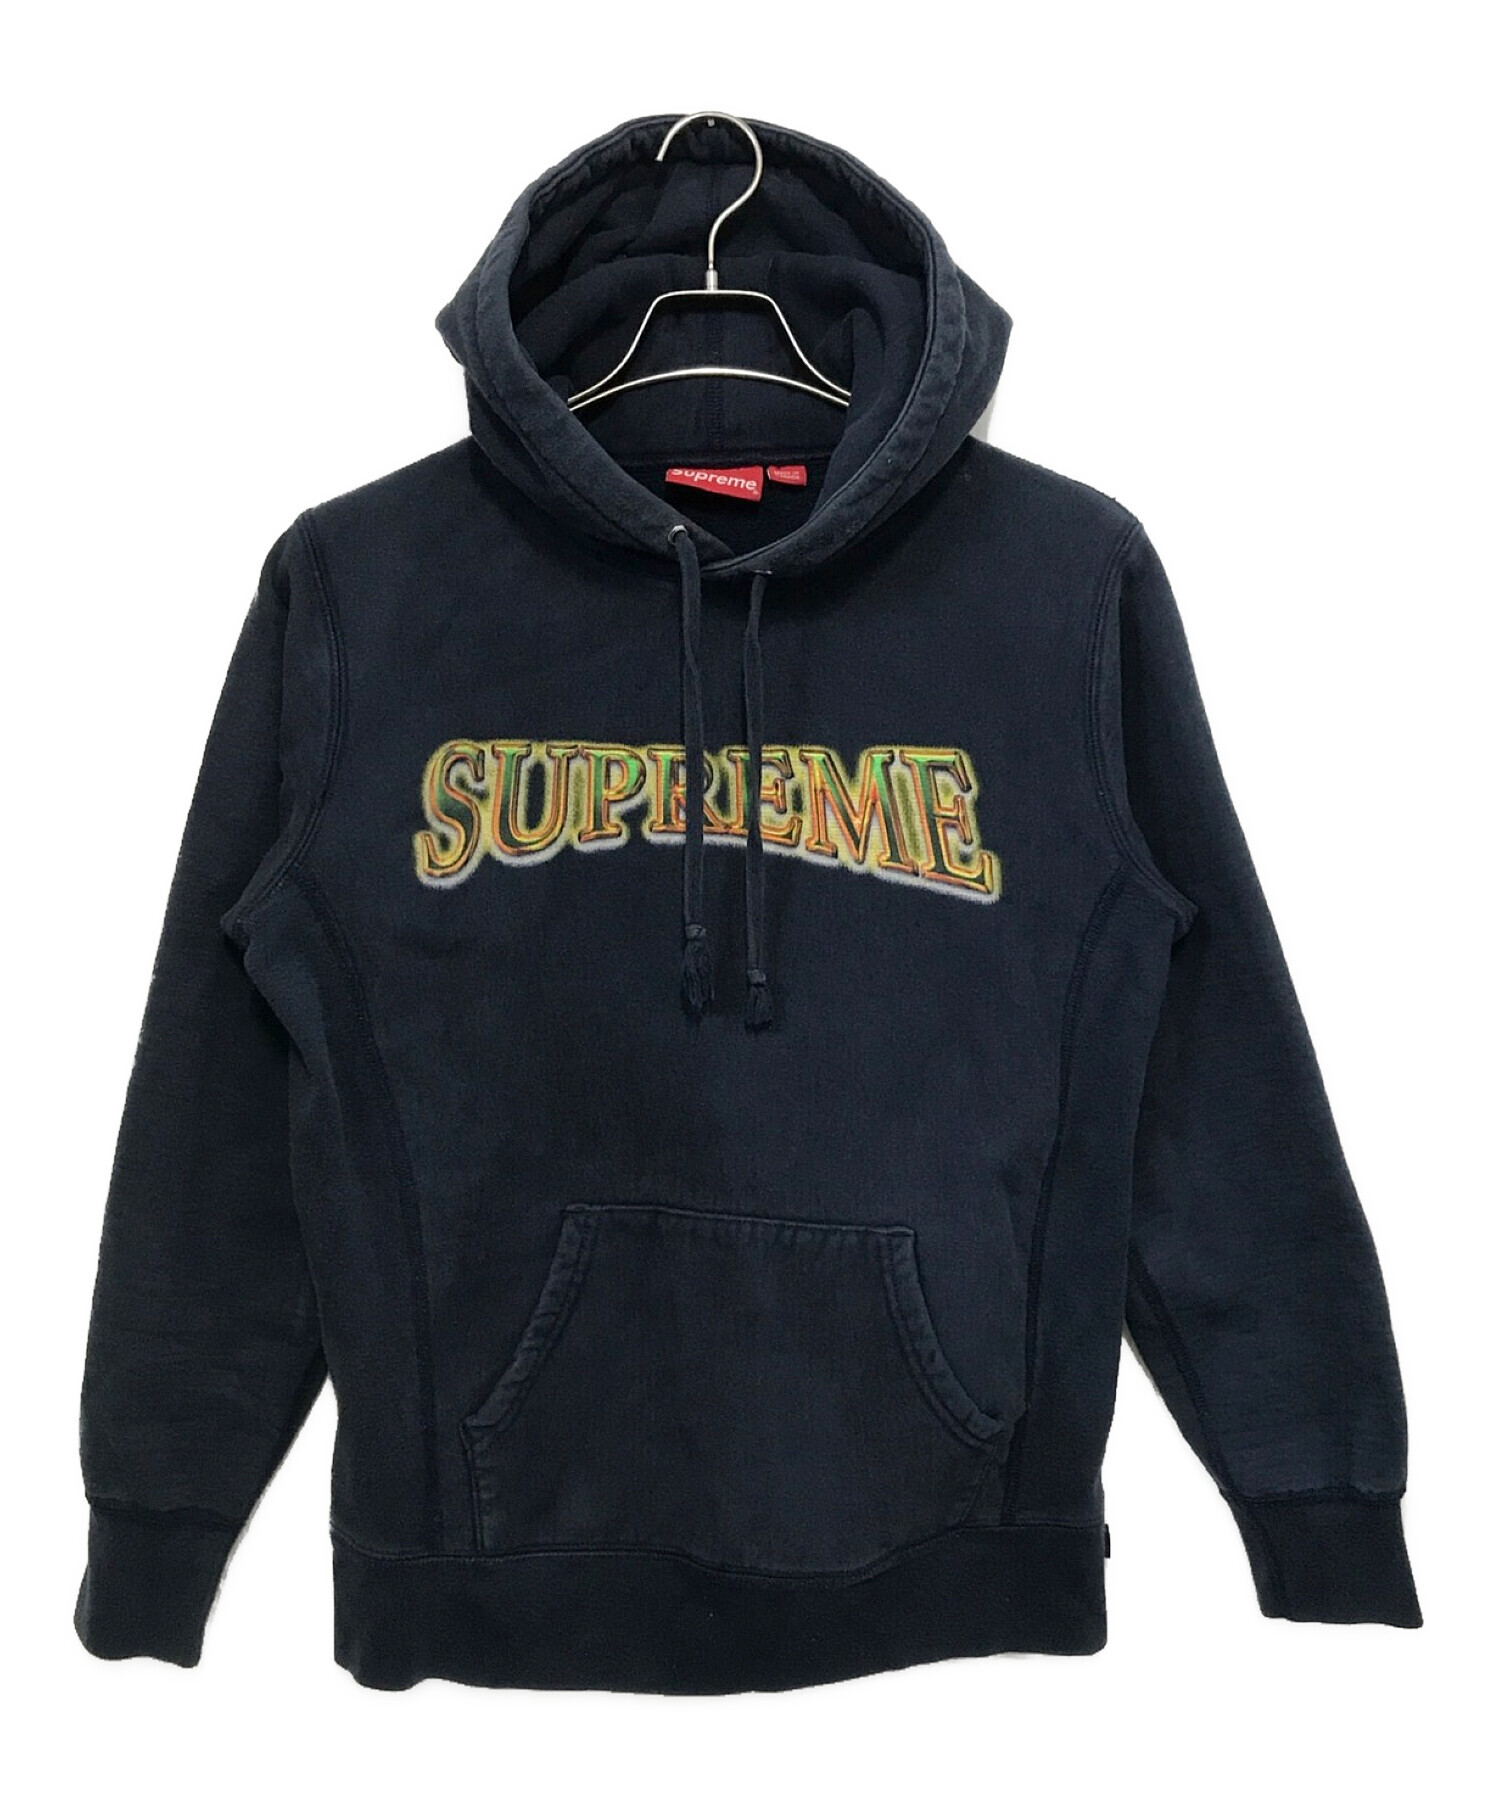 SUPREME (シュプリーム) Metallic Arc Hooded Sweatshirt / メタリック アーク フード スウェット シャツ  ネイビー サイズ:S